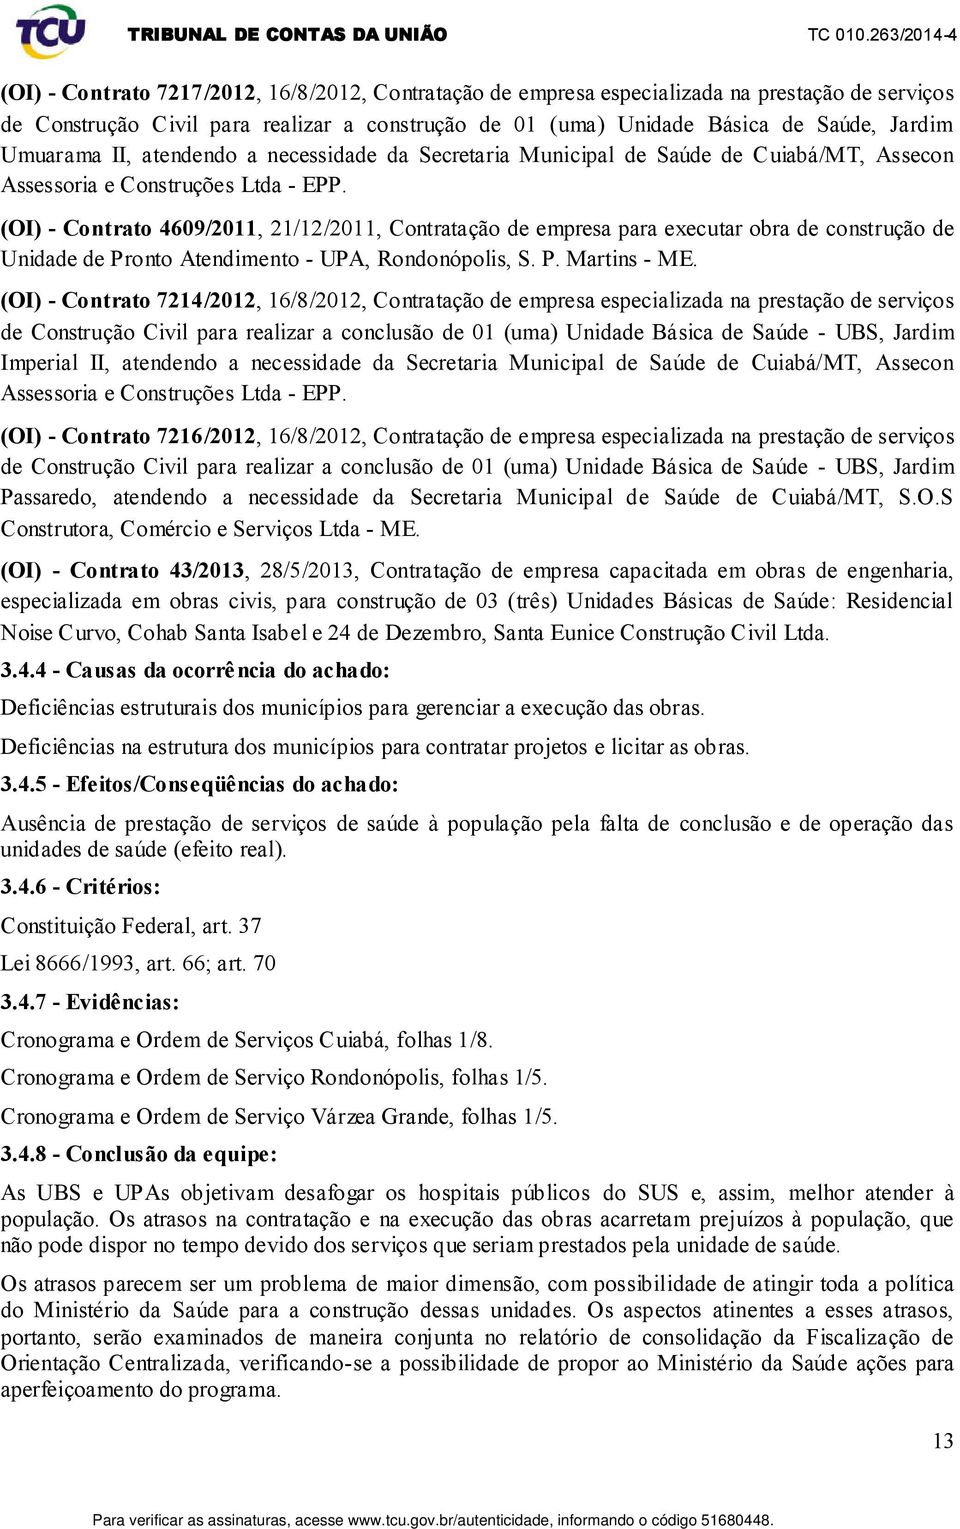 (OI) - Contrato 4609/2011, 21/12/2011, Contratação de empresa para executar obra de construção de Unidade de Pronto Atendimento - UPA, Rondonópolis, S. P. Martins - ME.